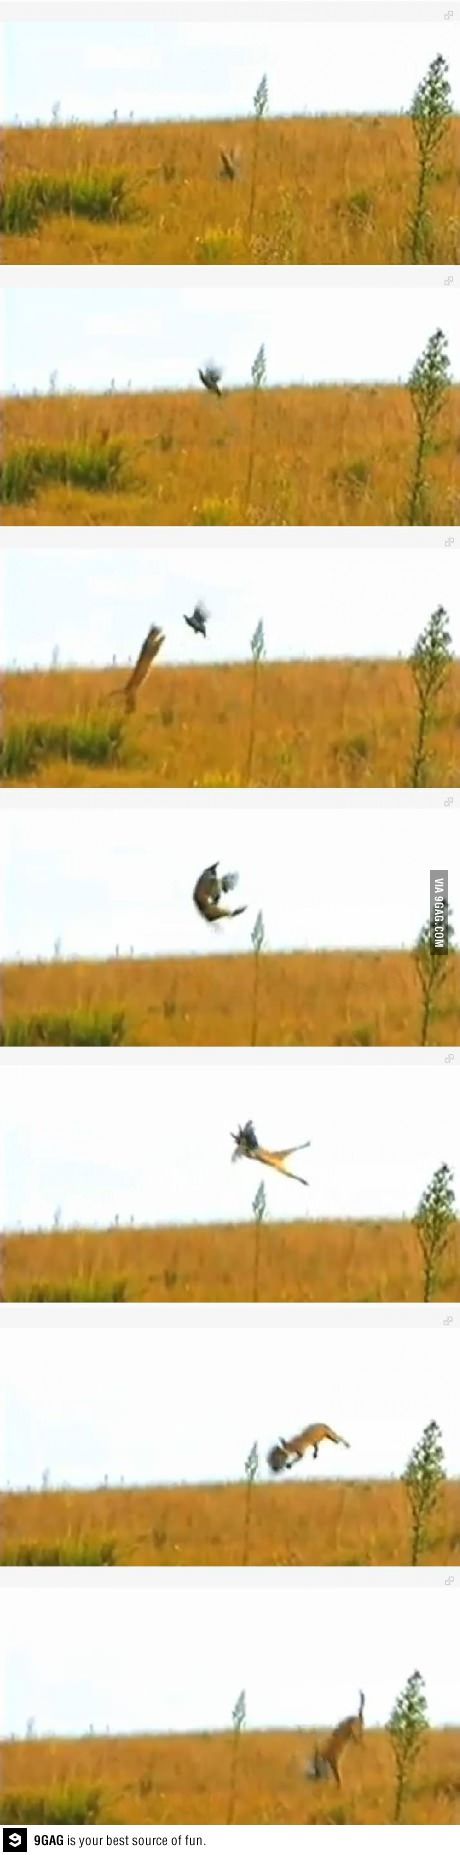 치타가 새를 잡는 방법.jpg